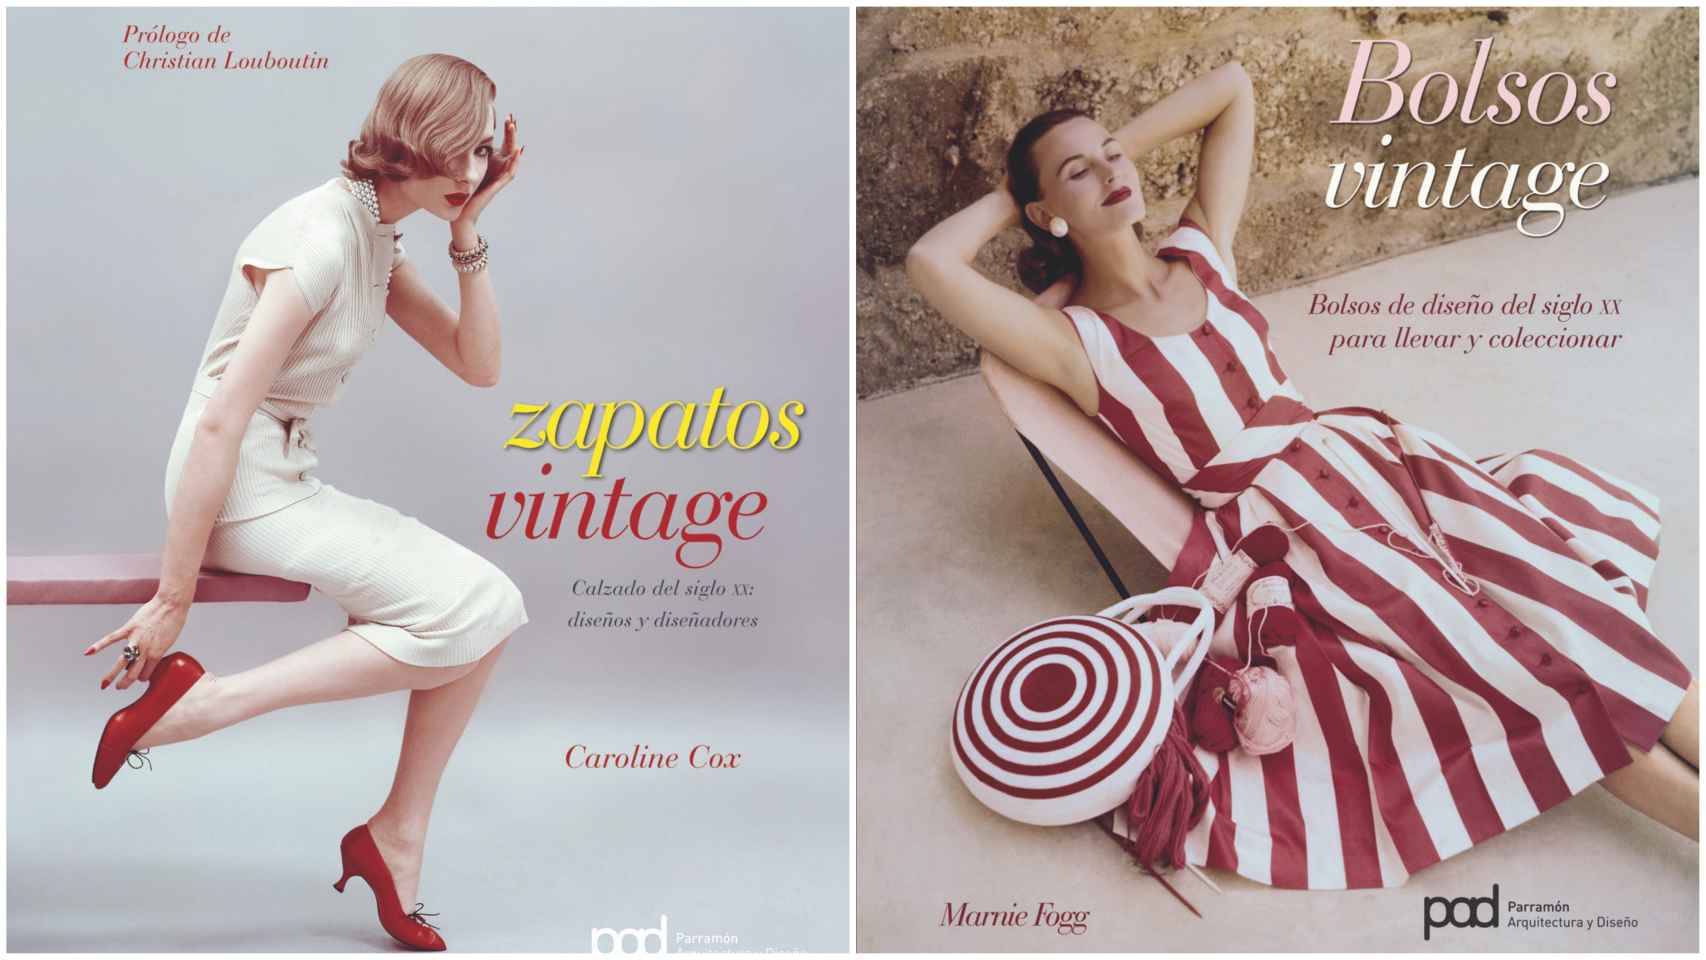 “Bolsos vintage” (Marnie Fogg, 2009) y “Zapatos vintage” (Caroline Cox, 2009): ambos libros pertenecen a una colección que ahonda en prendas de antaño.